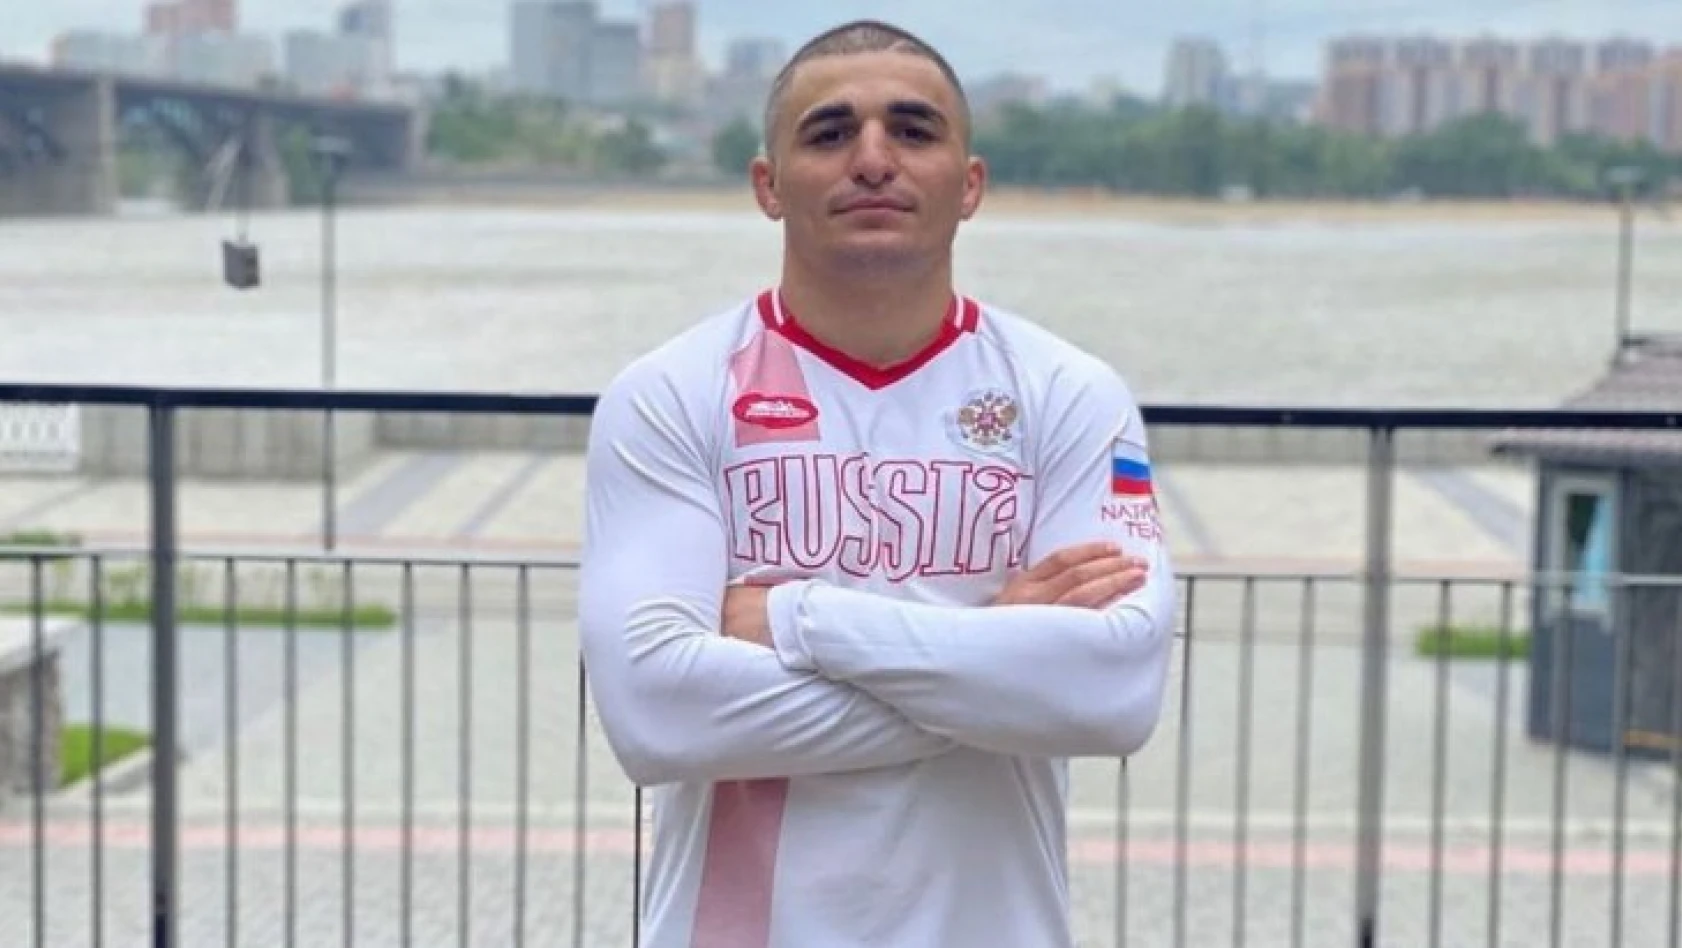 Rus boksör Arrest Sahakyan, nakavt olduktan sonra komaya girip yaşamını yitirdi